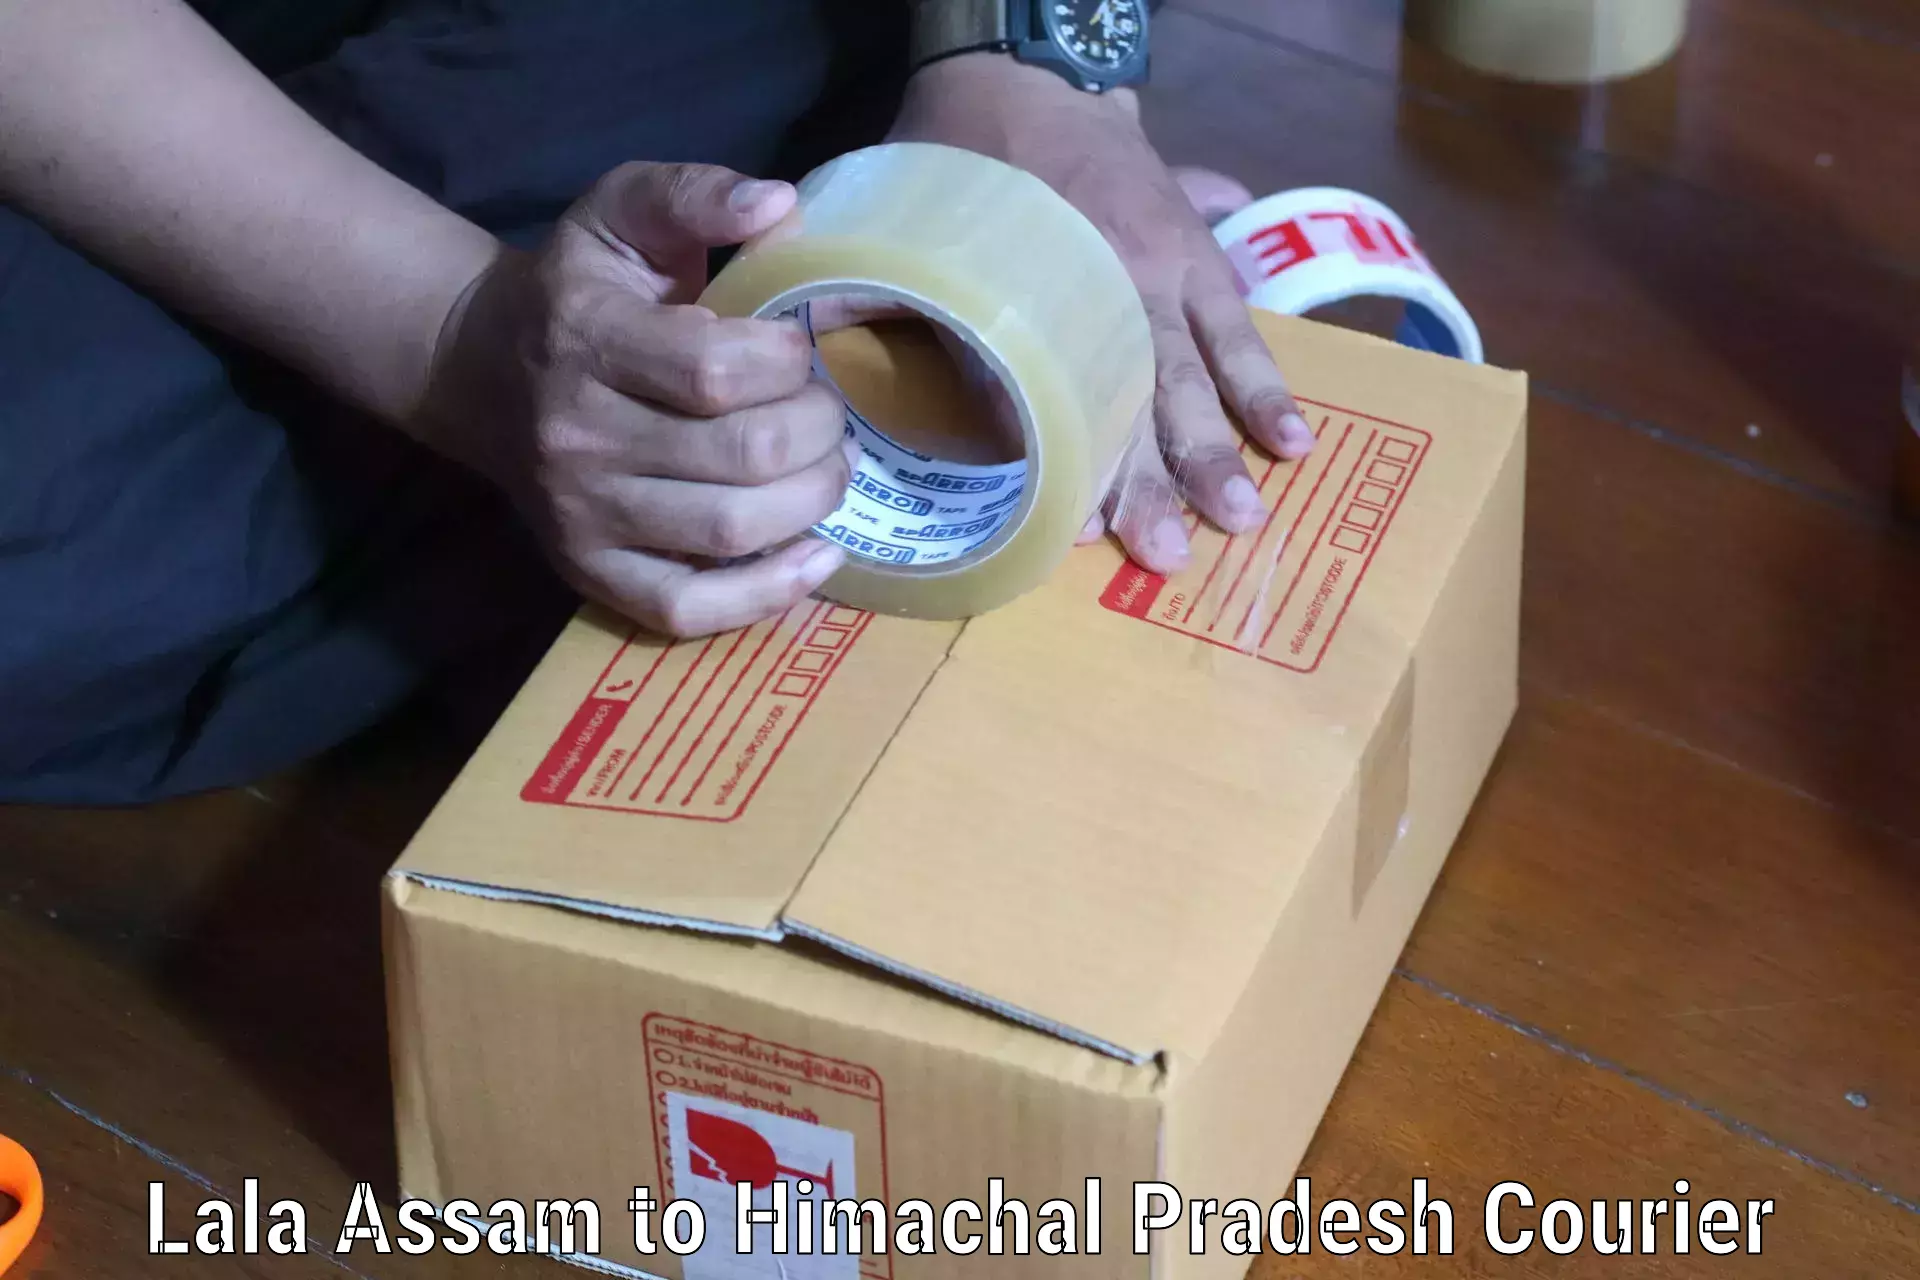 Courier service comparison Lala Assam to Sandhol